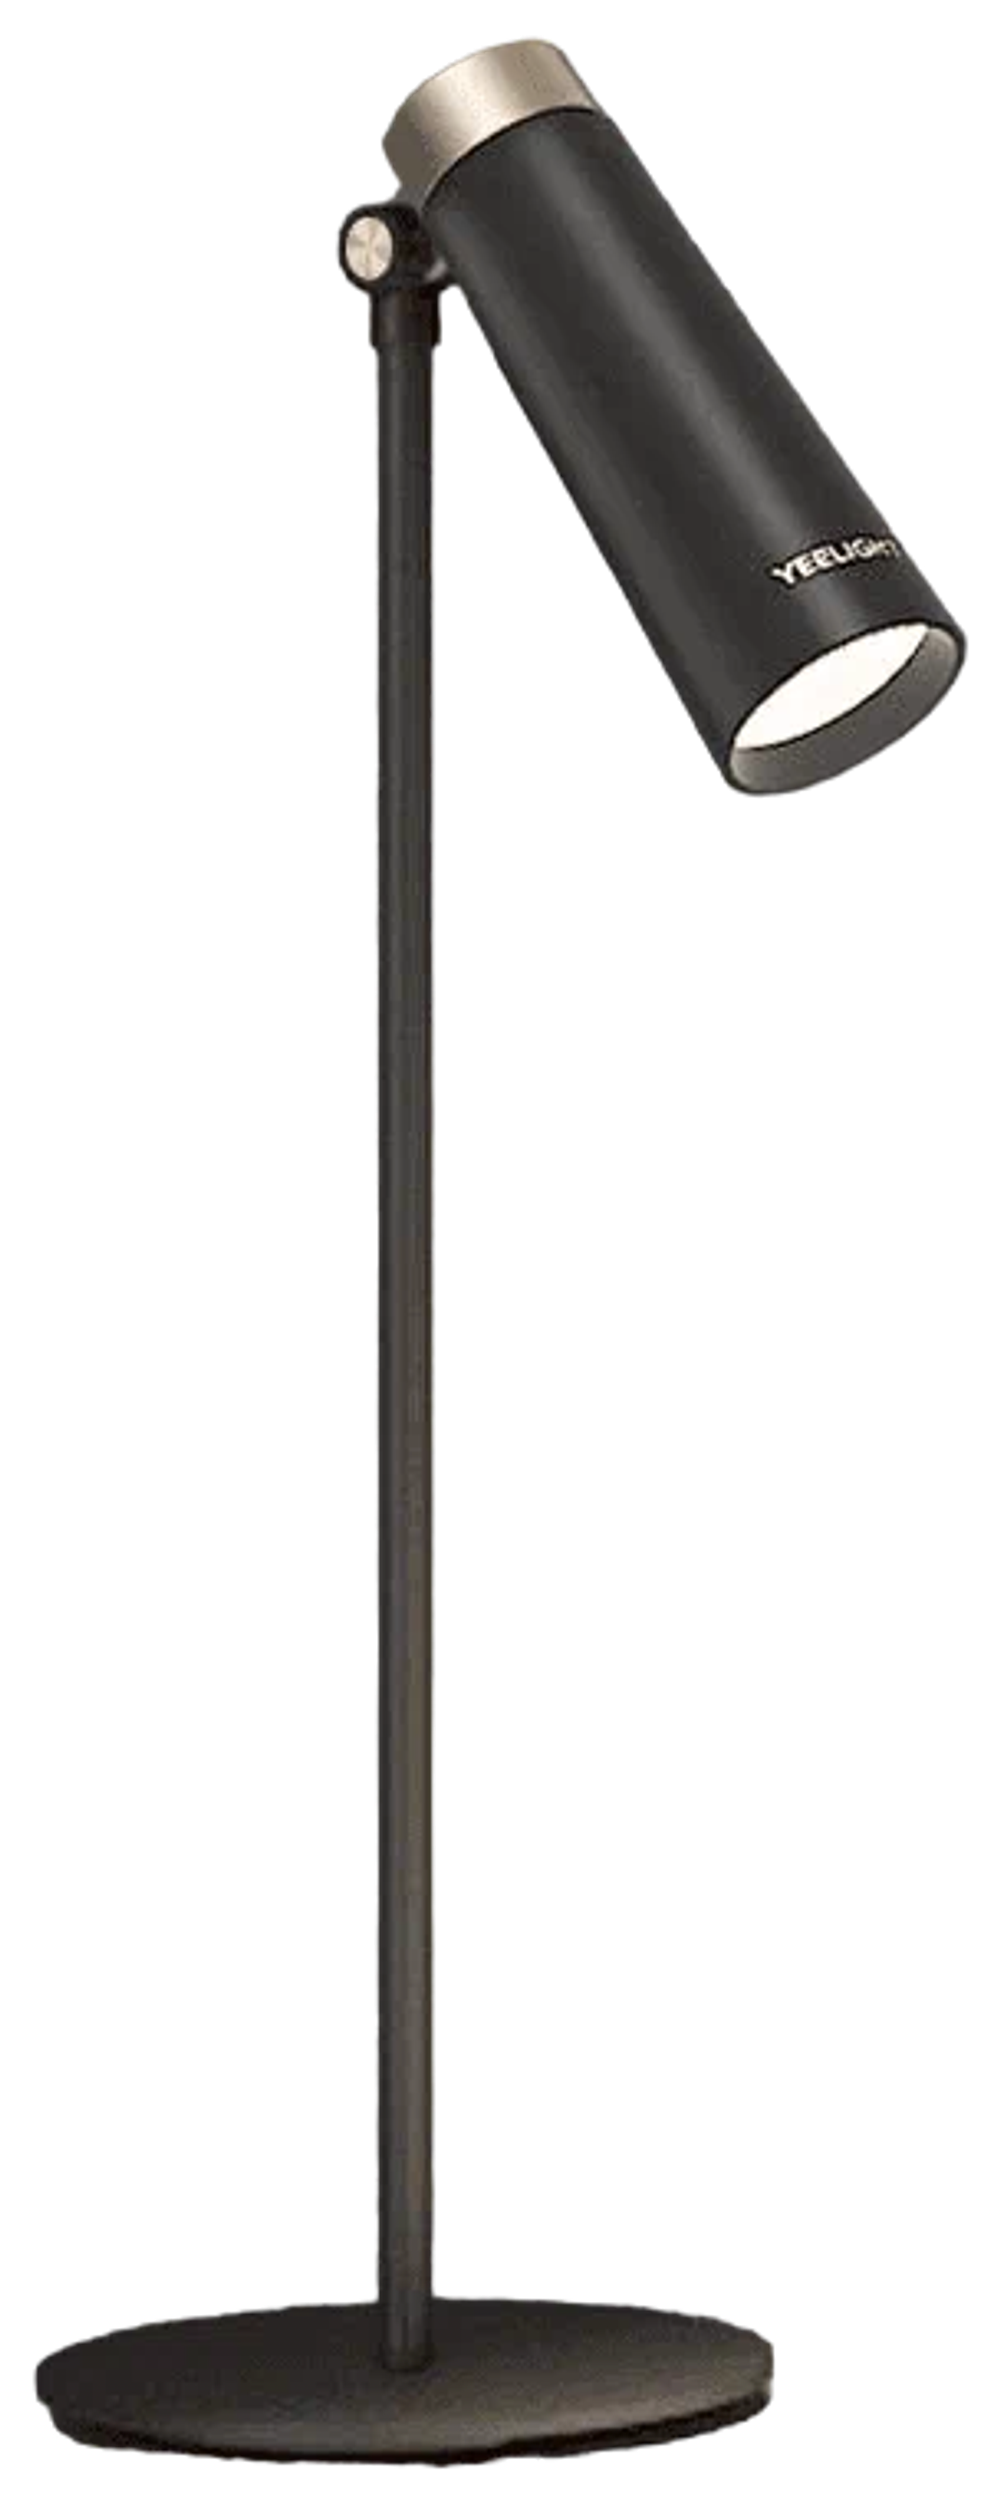 Светильник Yeelight 4-in-1 Rechargeable Desk Lamp, модель YLYTD-0011